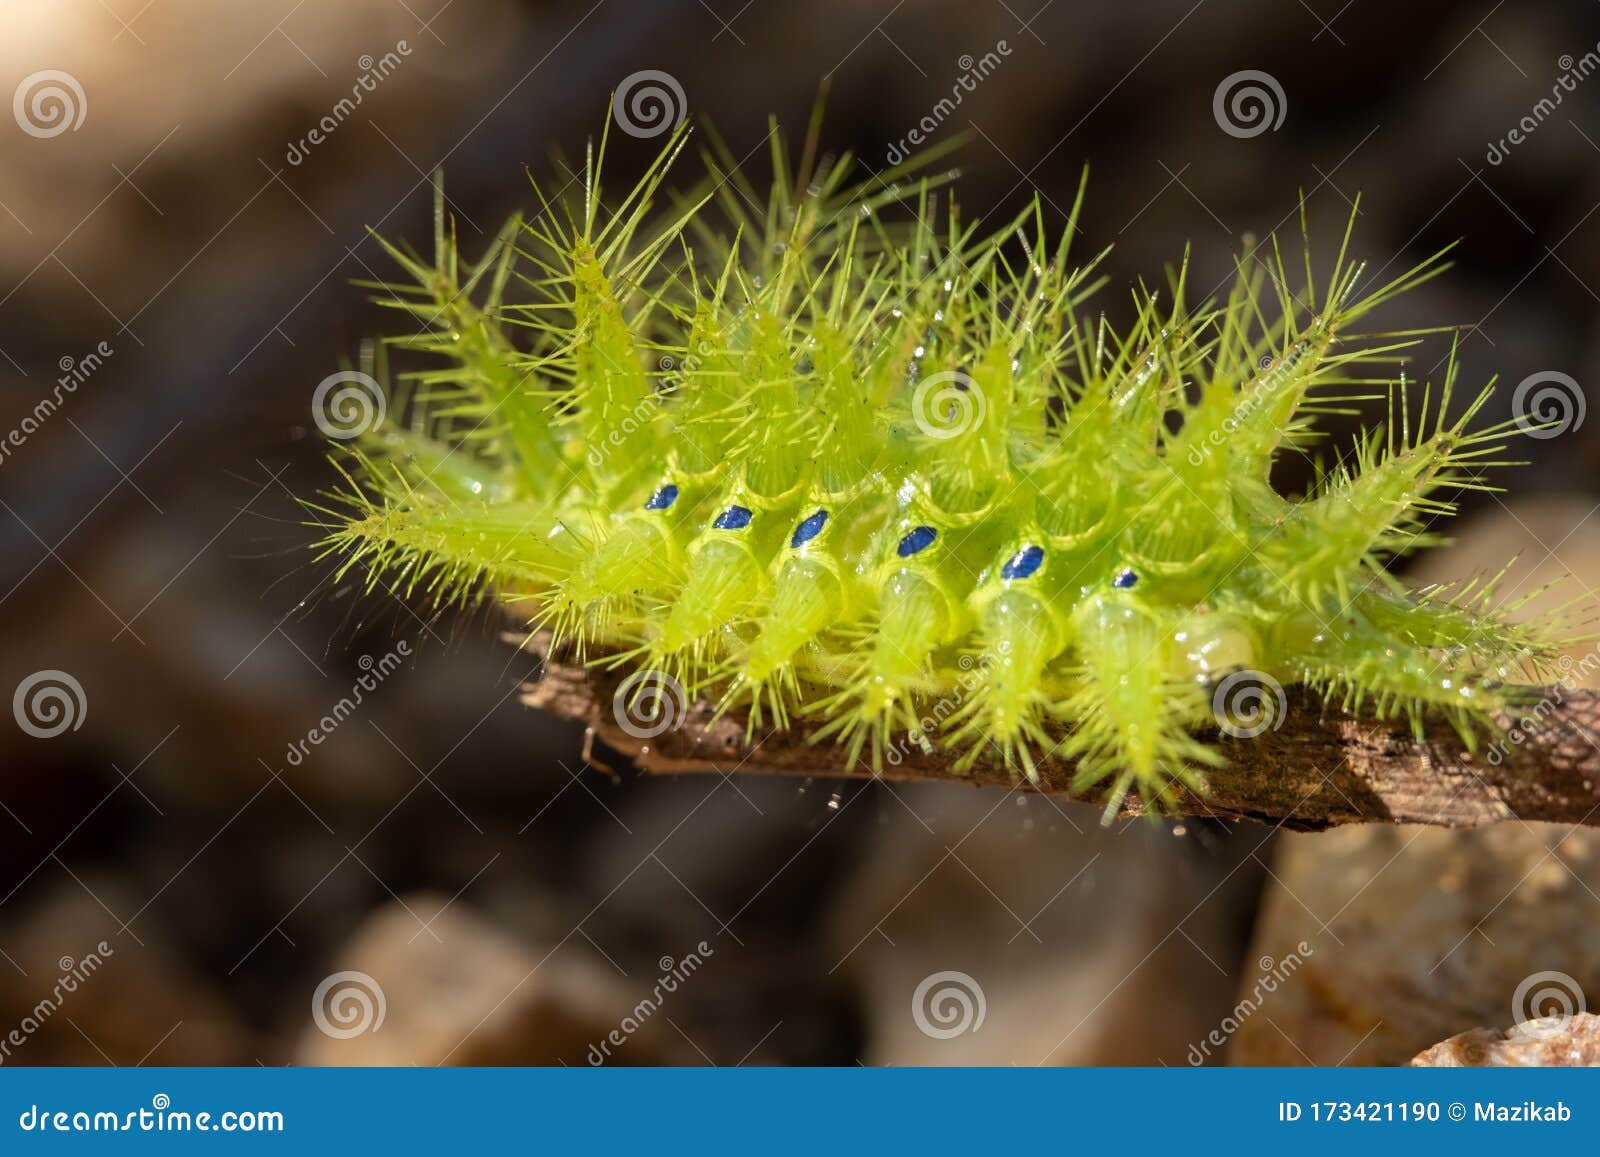 Nettle Caterpillar stock photo. Image of danger, green - 173421190